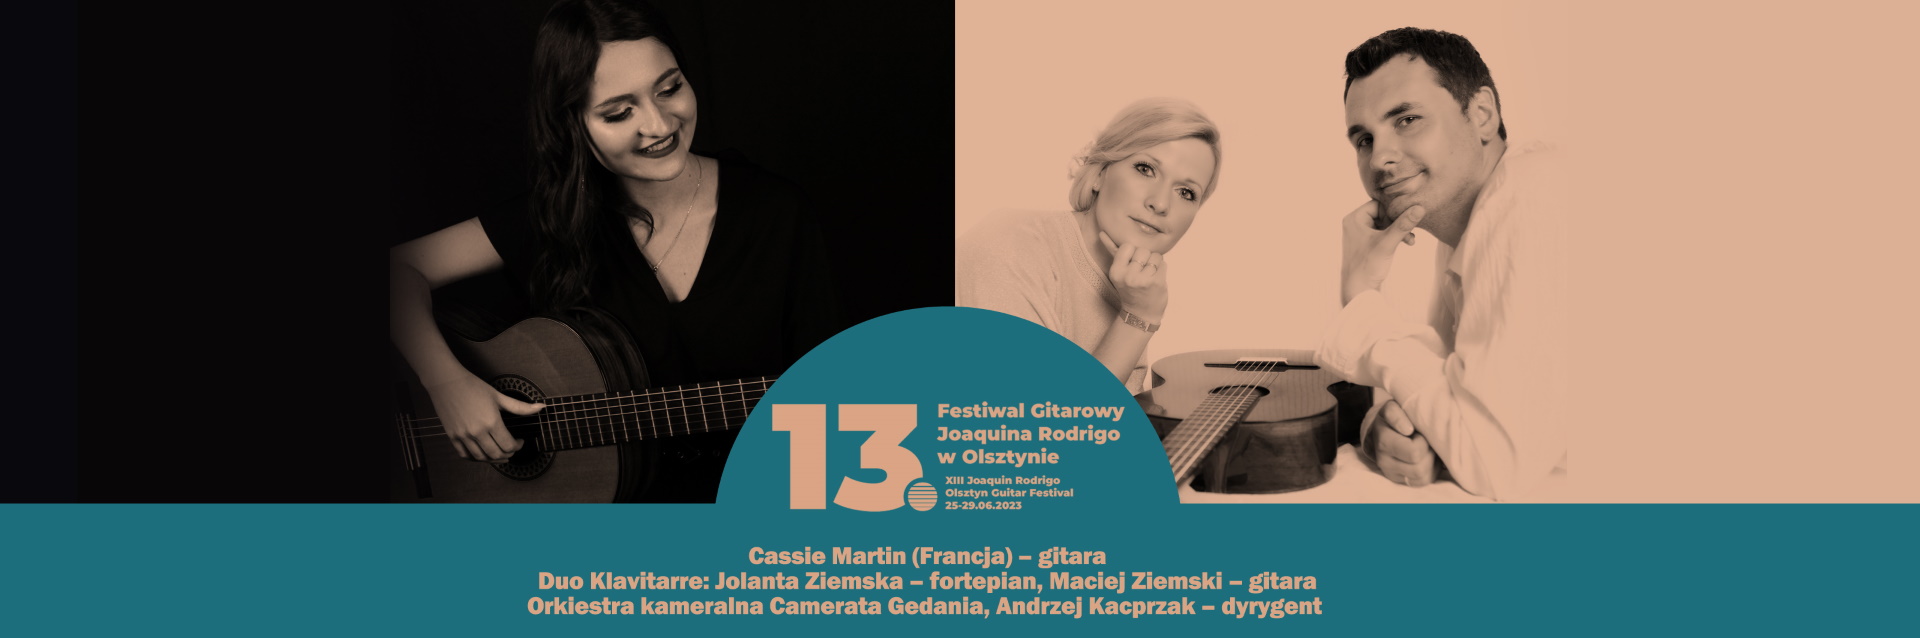 Plakat zapraszający w niedzielę 25 czerwca 2023 r. do Olsztyna na koncert inaugurujący XIII Festiwalu Gitarowego Joaquína Rodrigo Olsztyn 2023.